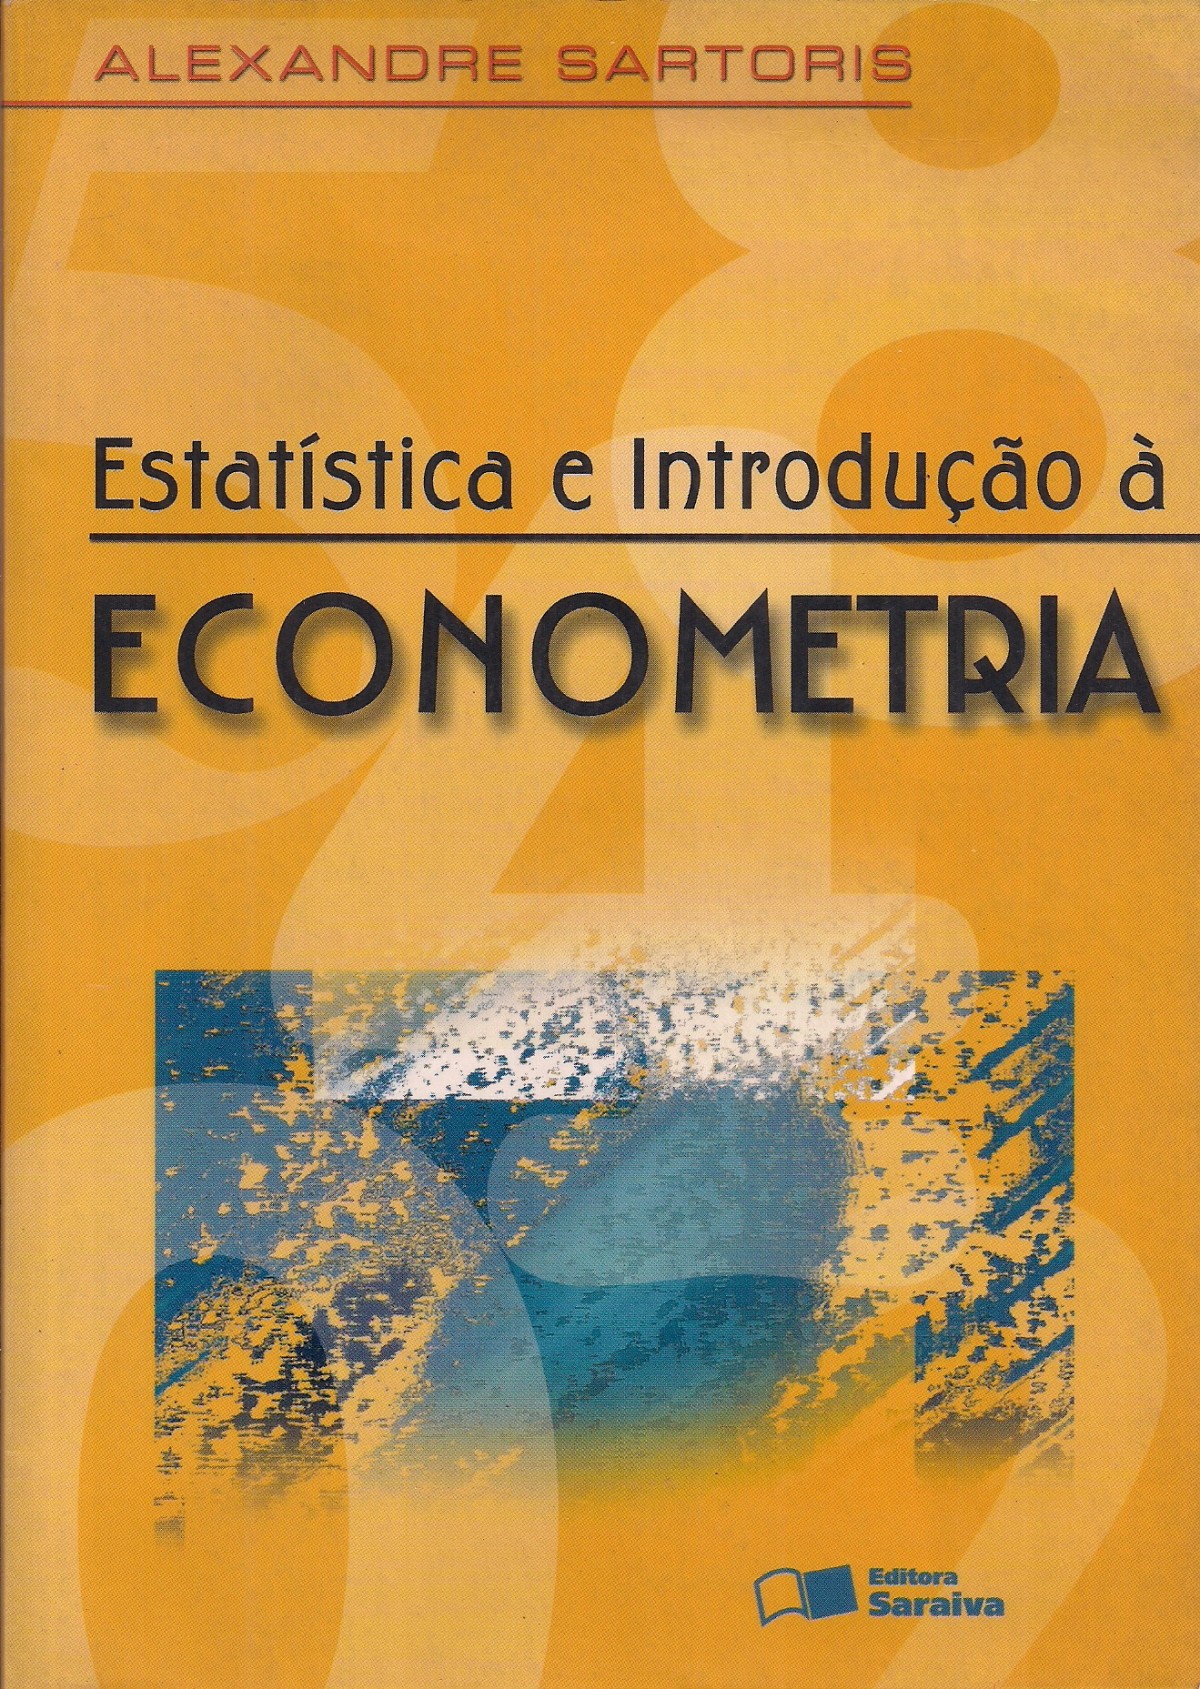 Foto 1 - Estatística e Introdução á Economia